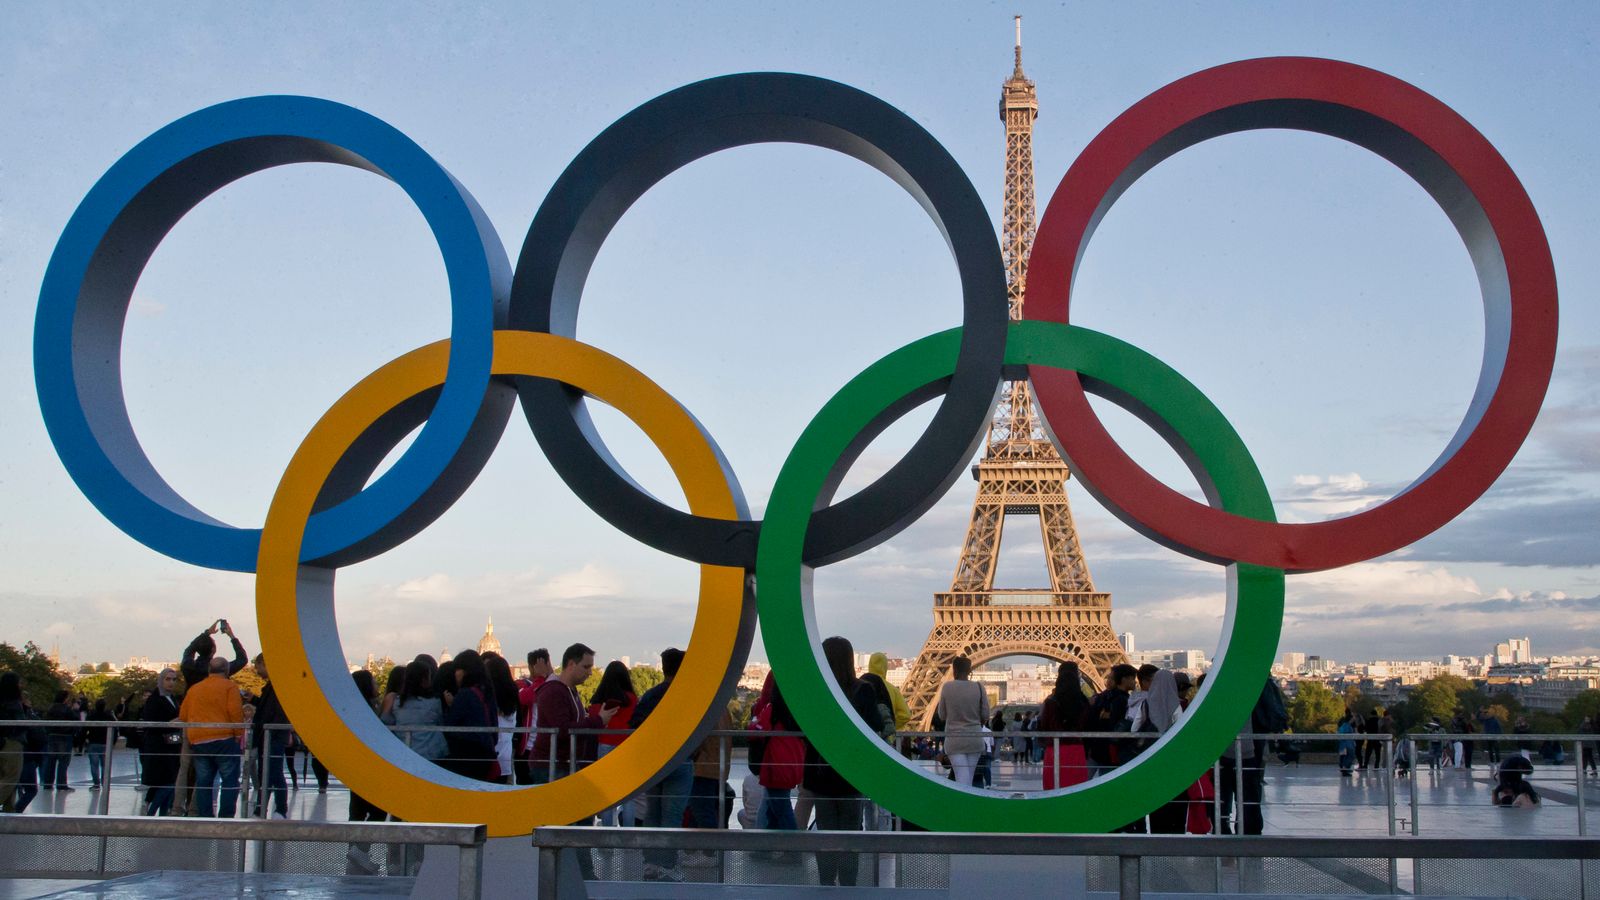 Paris 2024 Olympic Games Police raid headquarters of organising